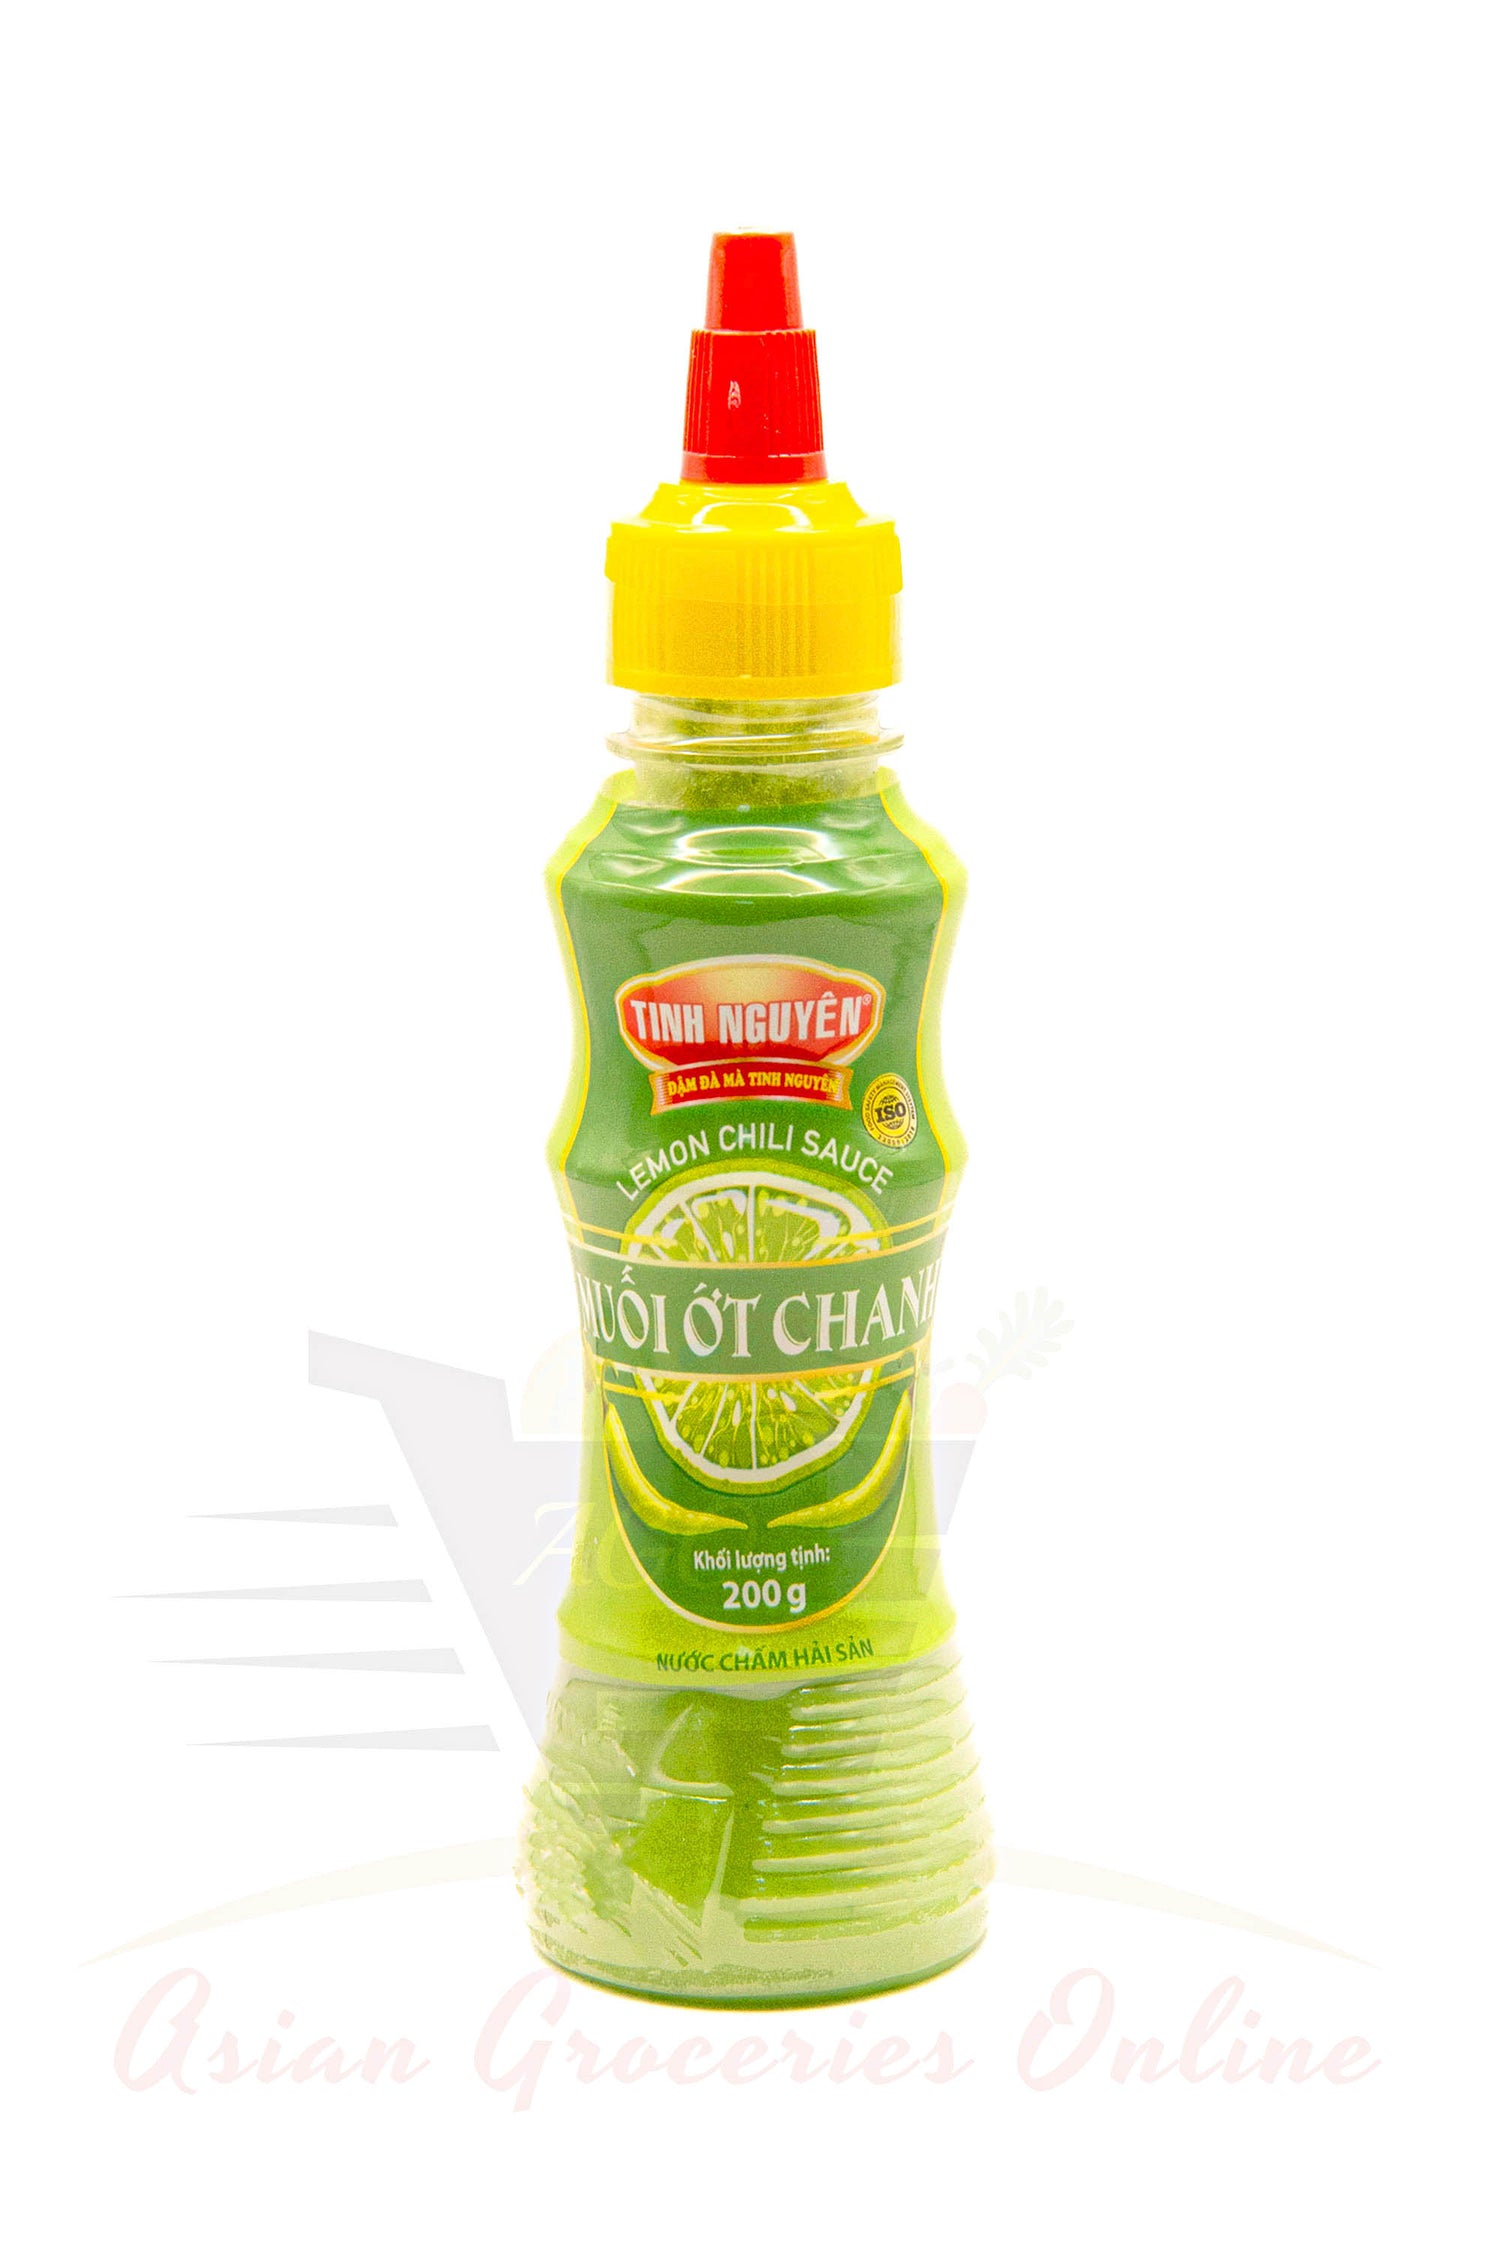 Tinh Nguyen Lemon Chili Sauce (Muoi Ot Chanh) 200g *Buy 1 get 1 free*